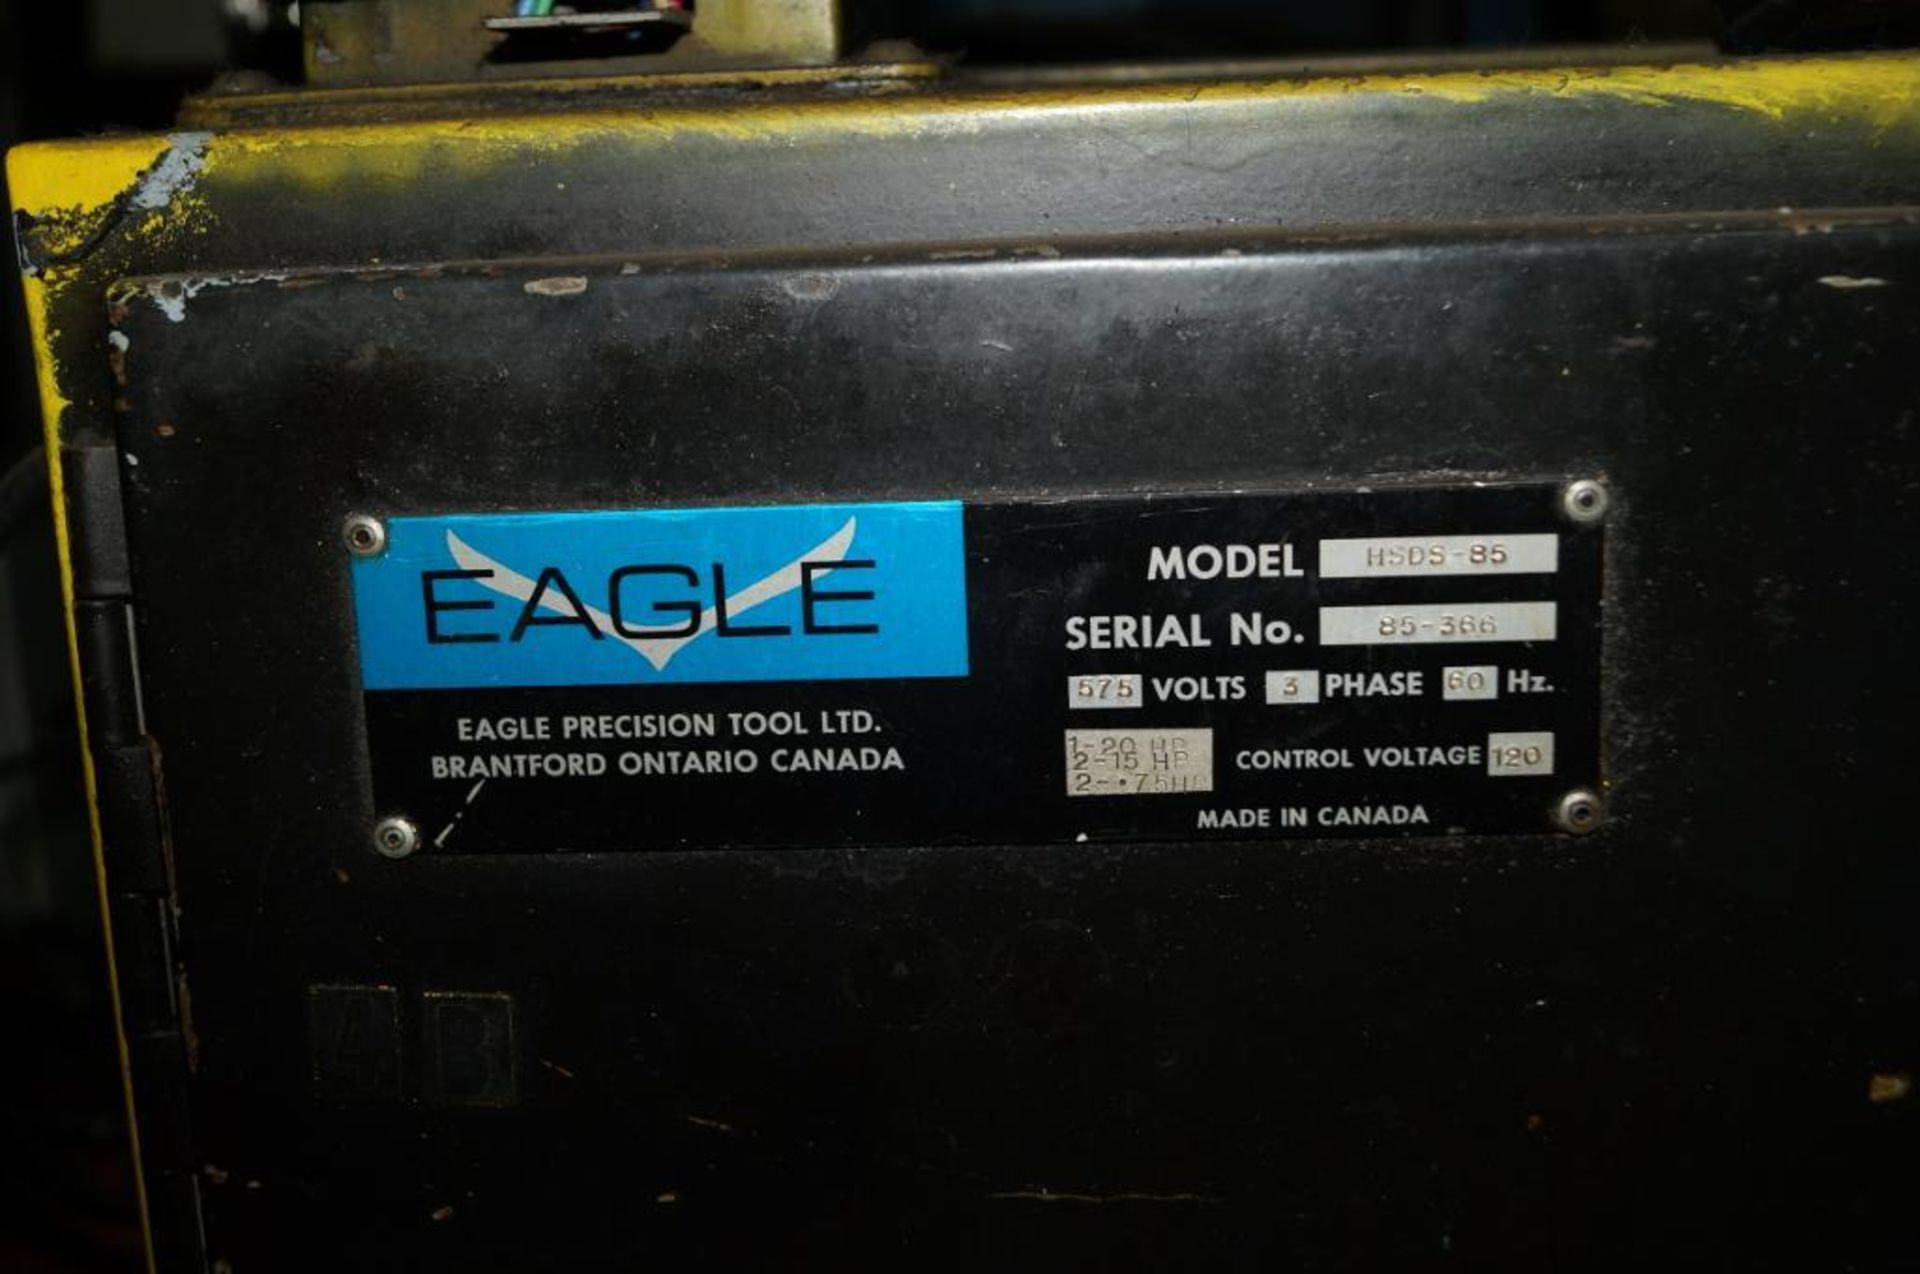 EAGLE, MODEL HSDS-85, SPINNER - Image 8 of 8